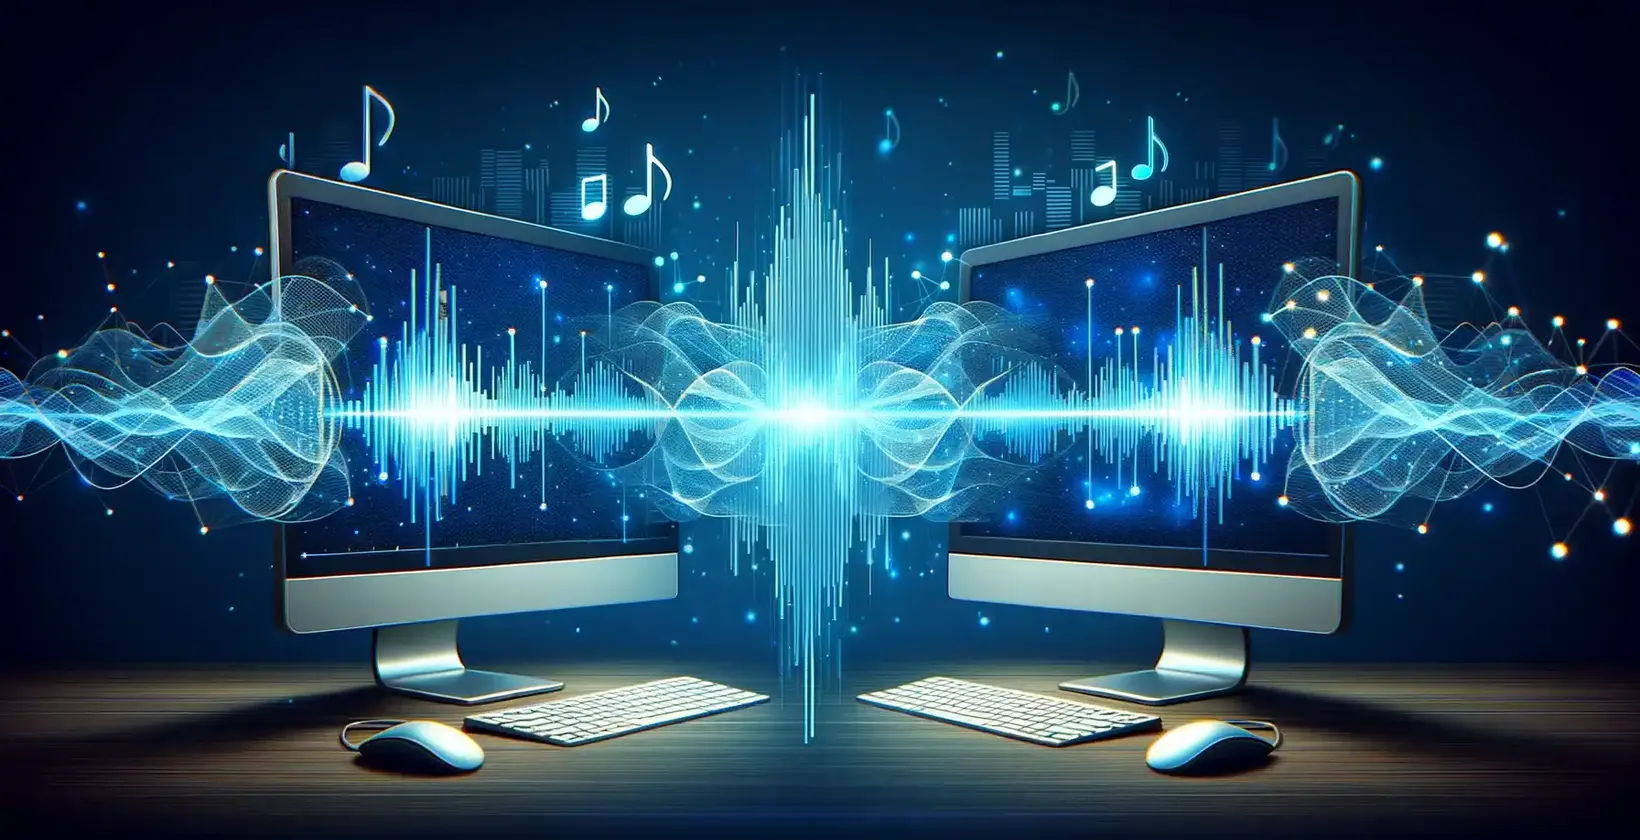 Dve počítačové obrazovky zobrazujúce noty a zvukové vlny, ktoré ilustrujú vizualizáciu zvuku.